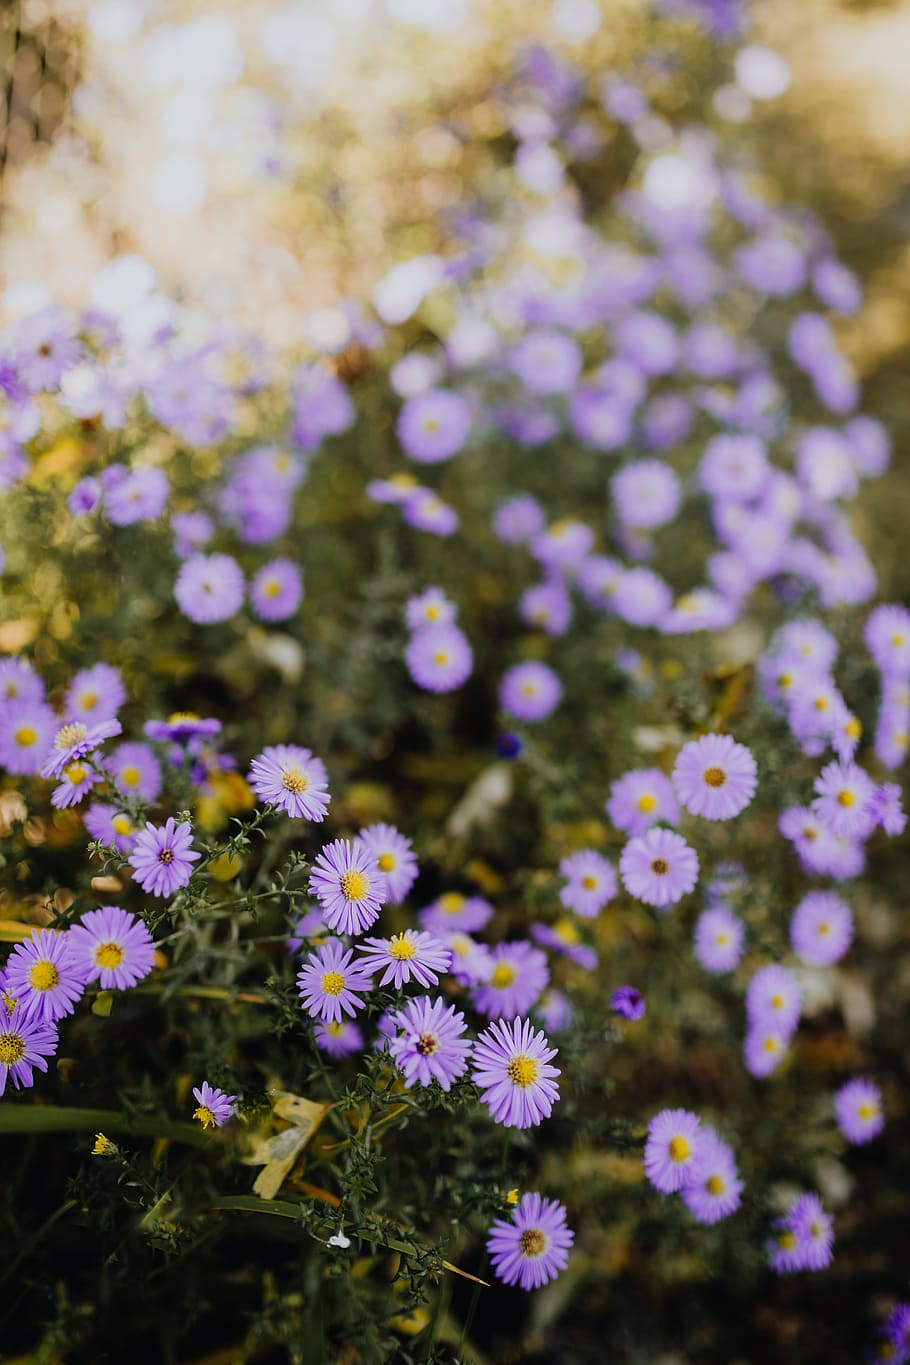 pequeño, púrpura, flores, jardín, flores de color púrpura, otoño, planta floreciente, flor, frescura, fragilidad